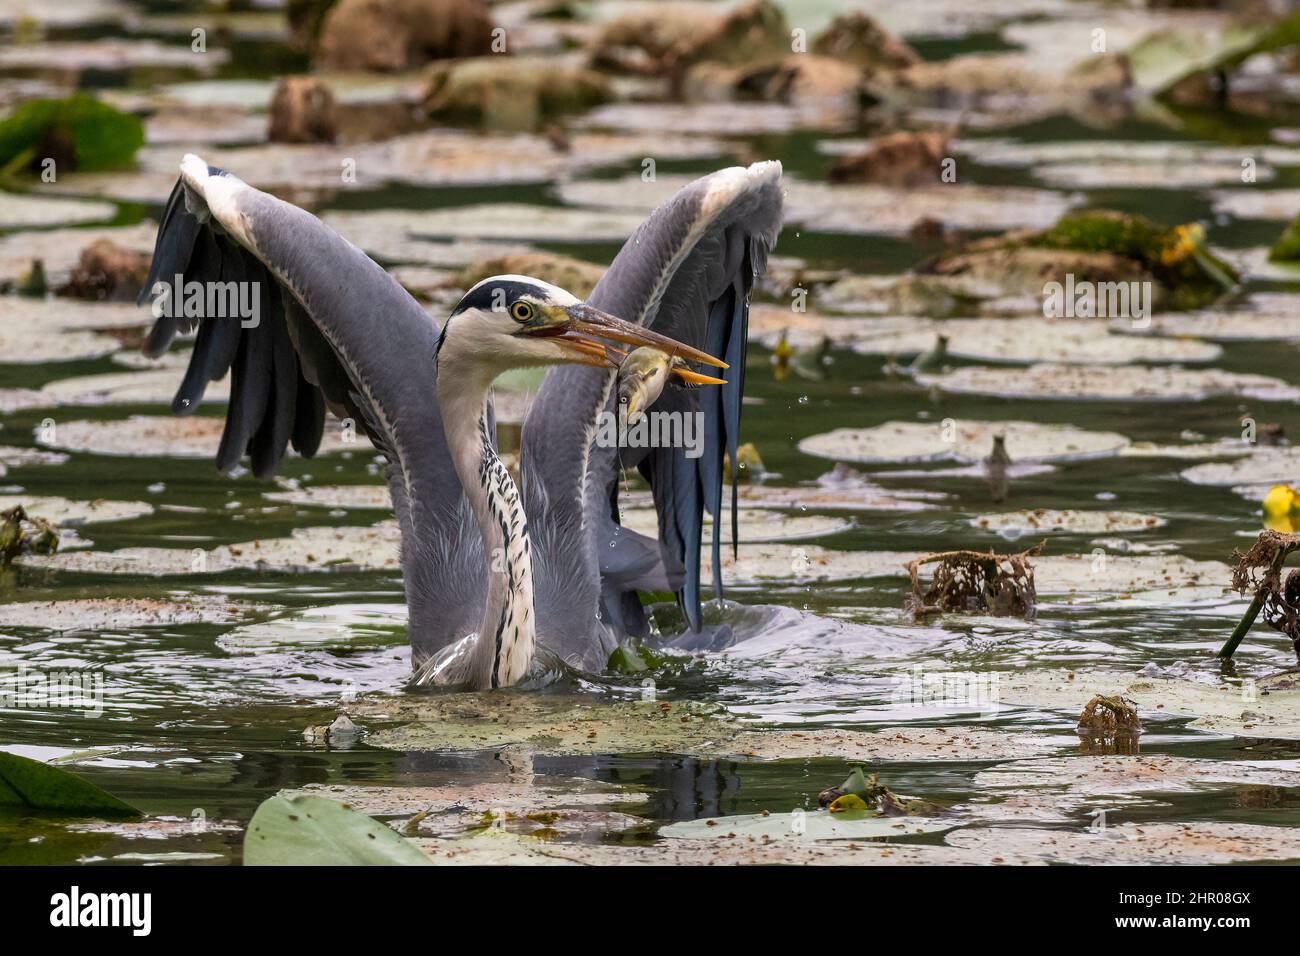 UN airone cinerino ha appena pescato un pesce tra le acque dell'Oasi Lipu di Torrile (Parma, Italien) Stockfoto